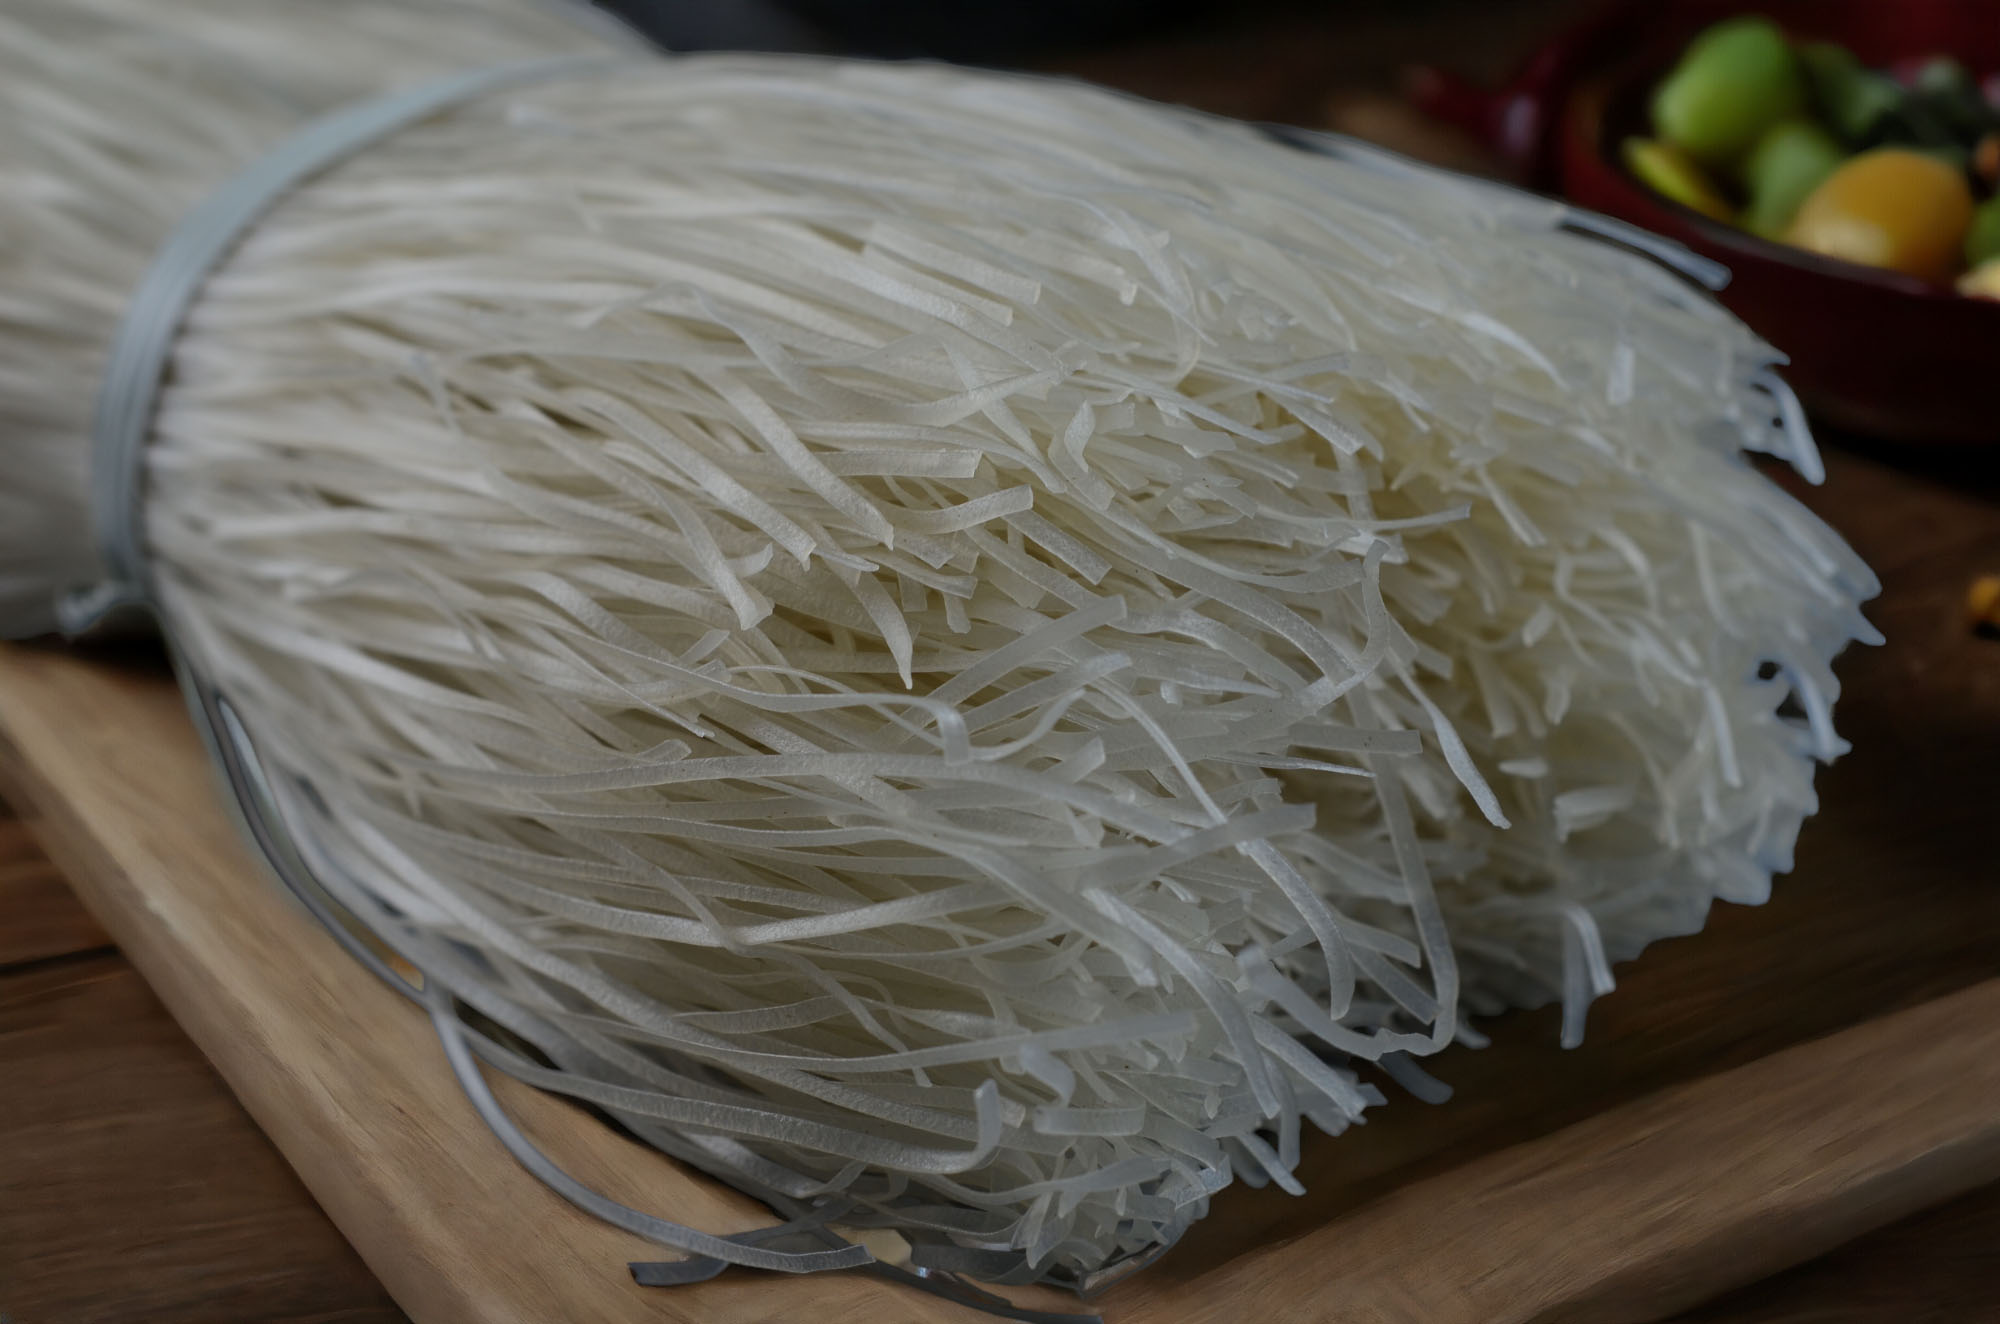 Mì gạo sợi phở, hủ tiếu khô, làm từ gạo quê thơm ngon (1kg) 1